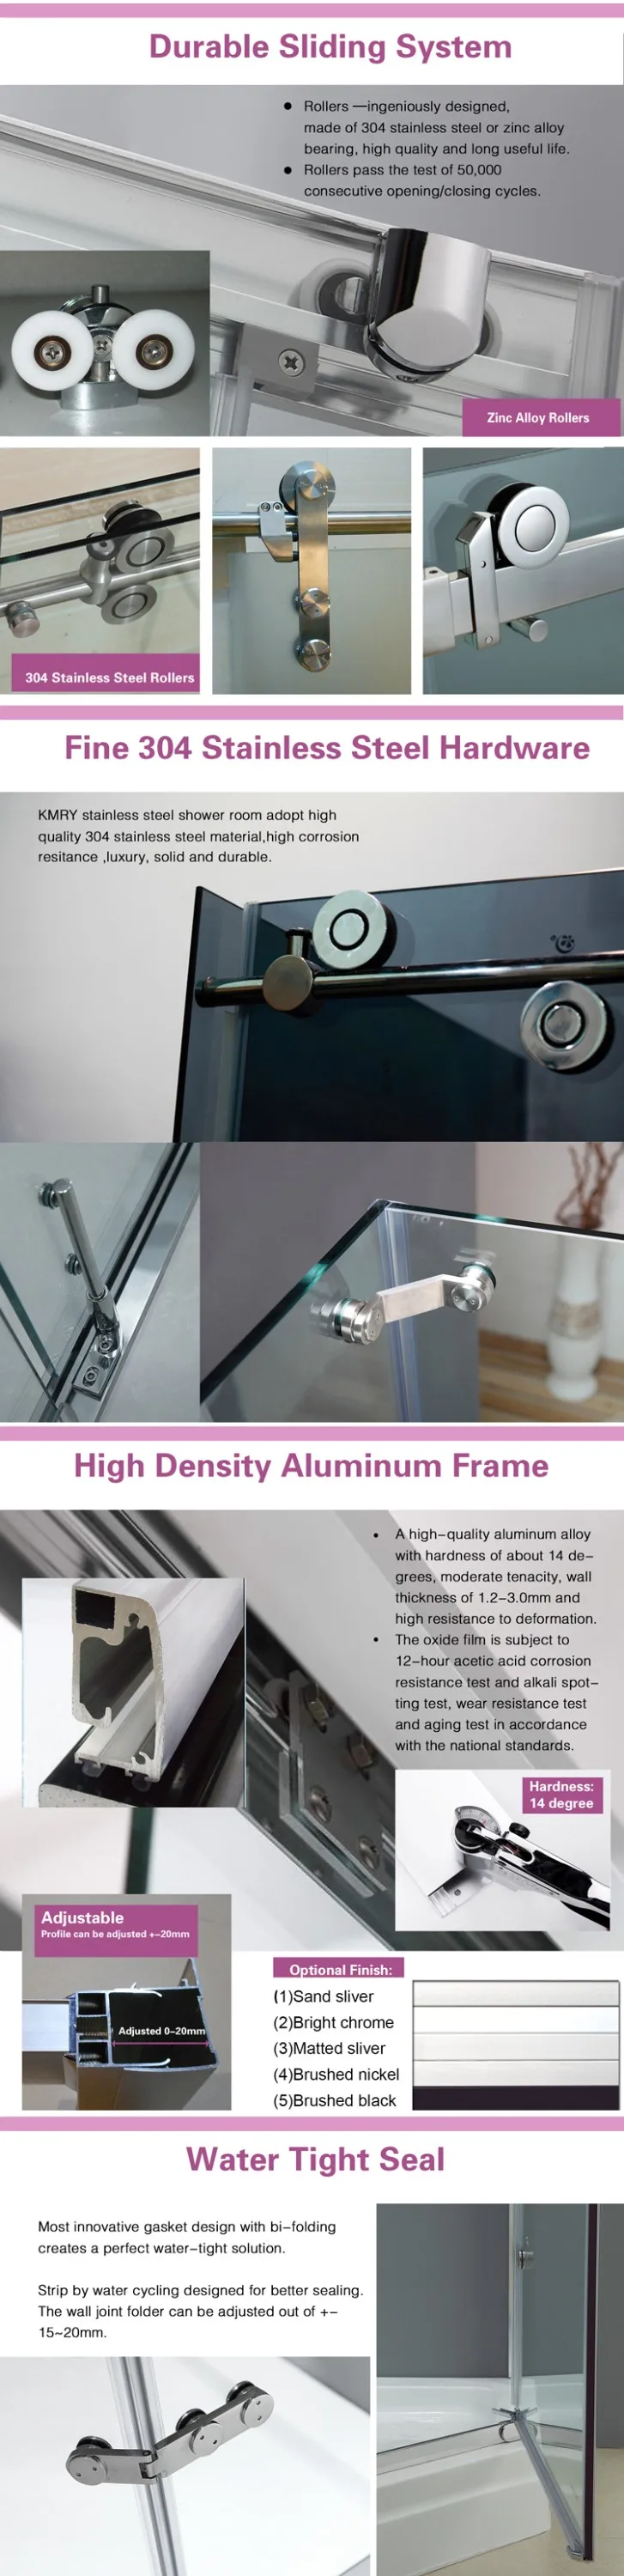 fiberglass Glass Shower Doors